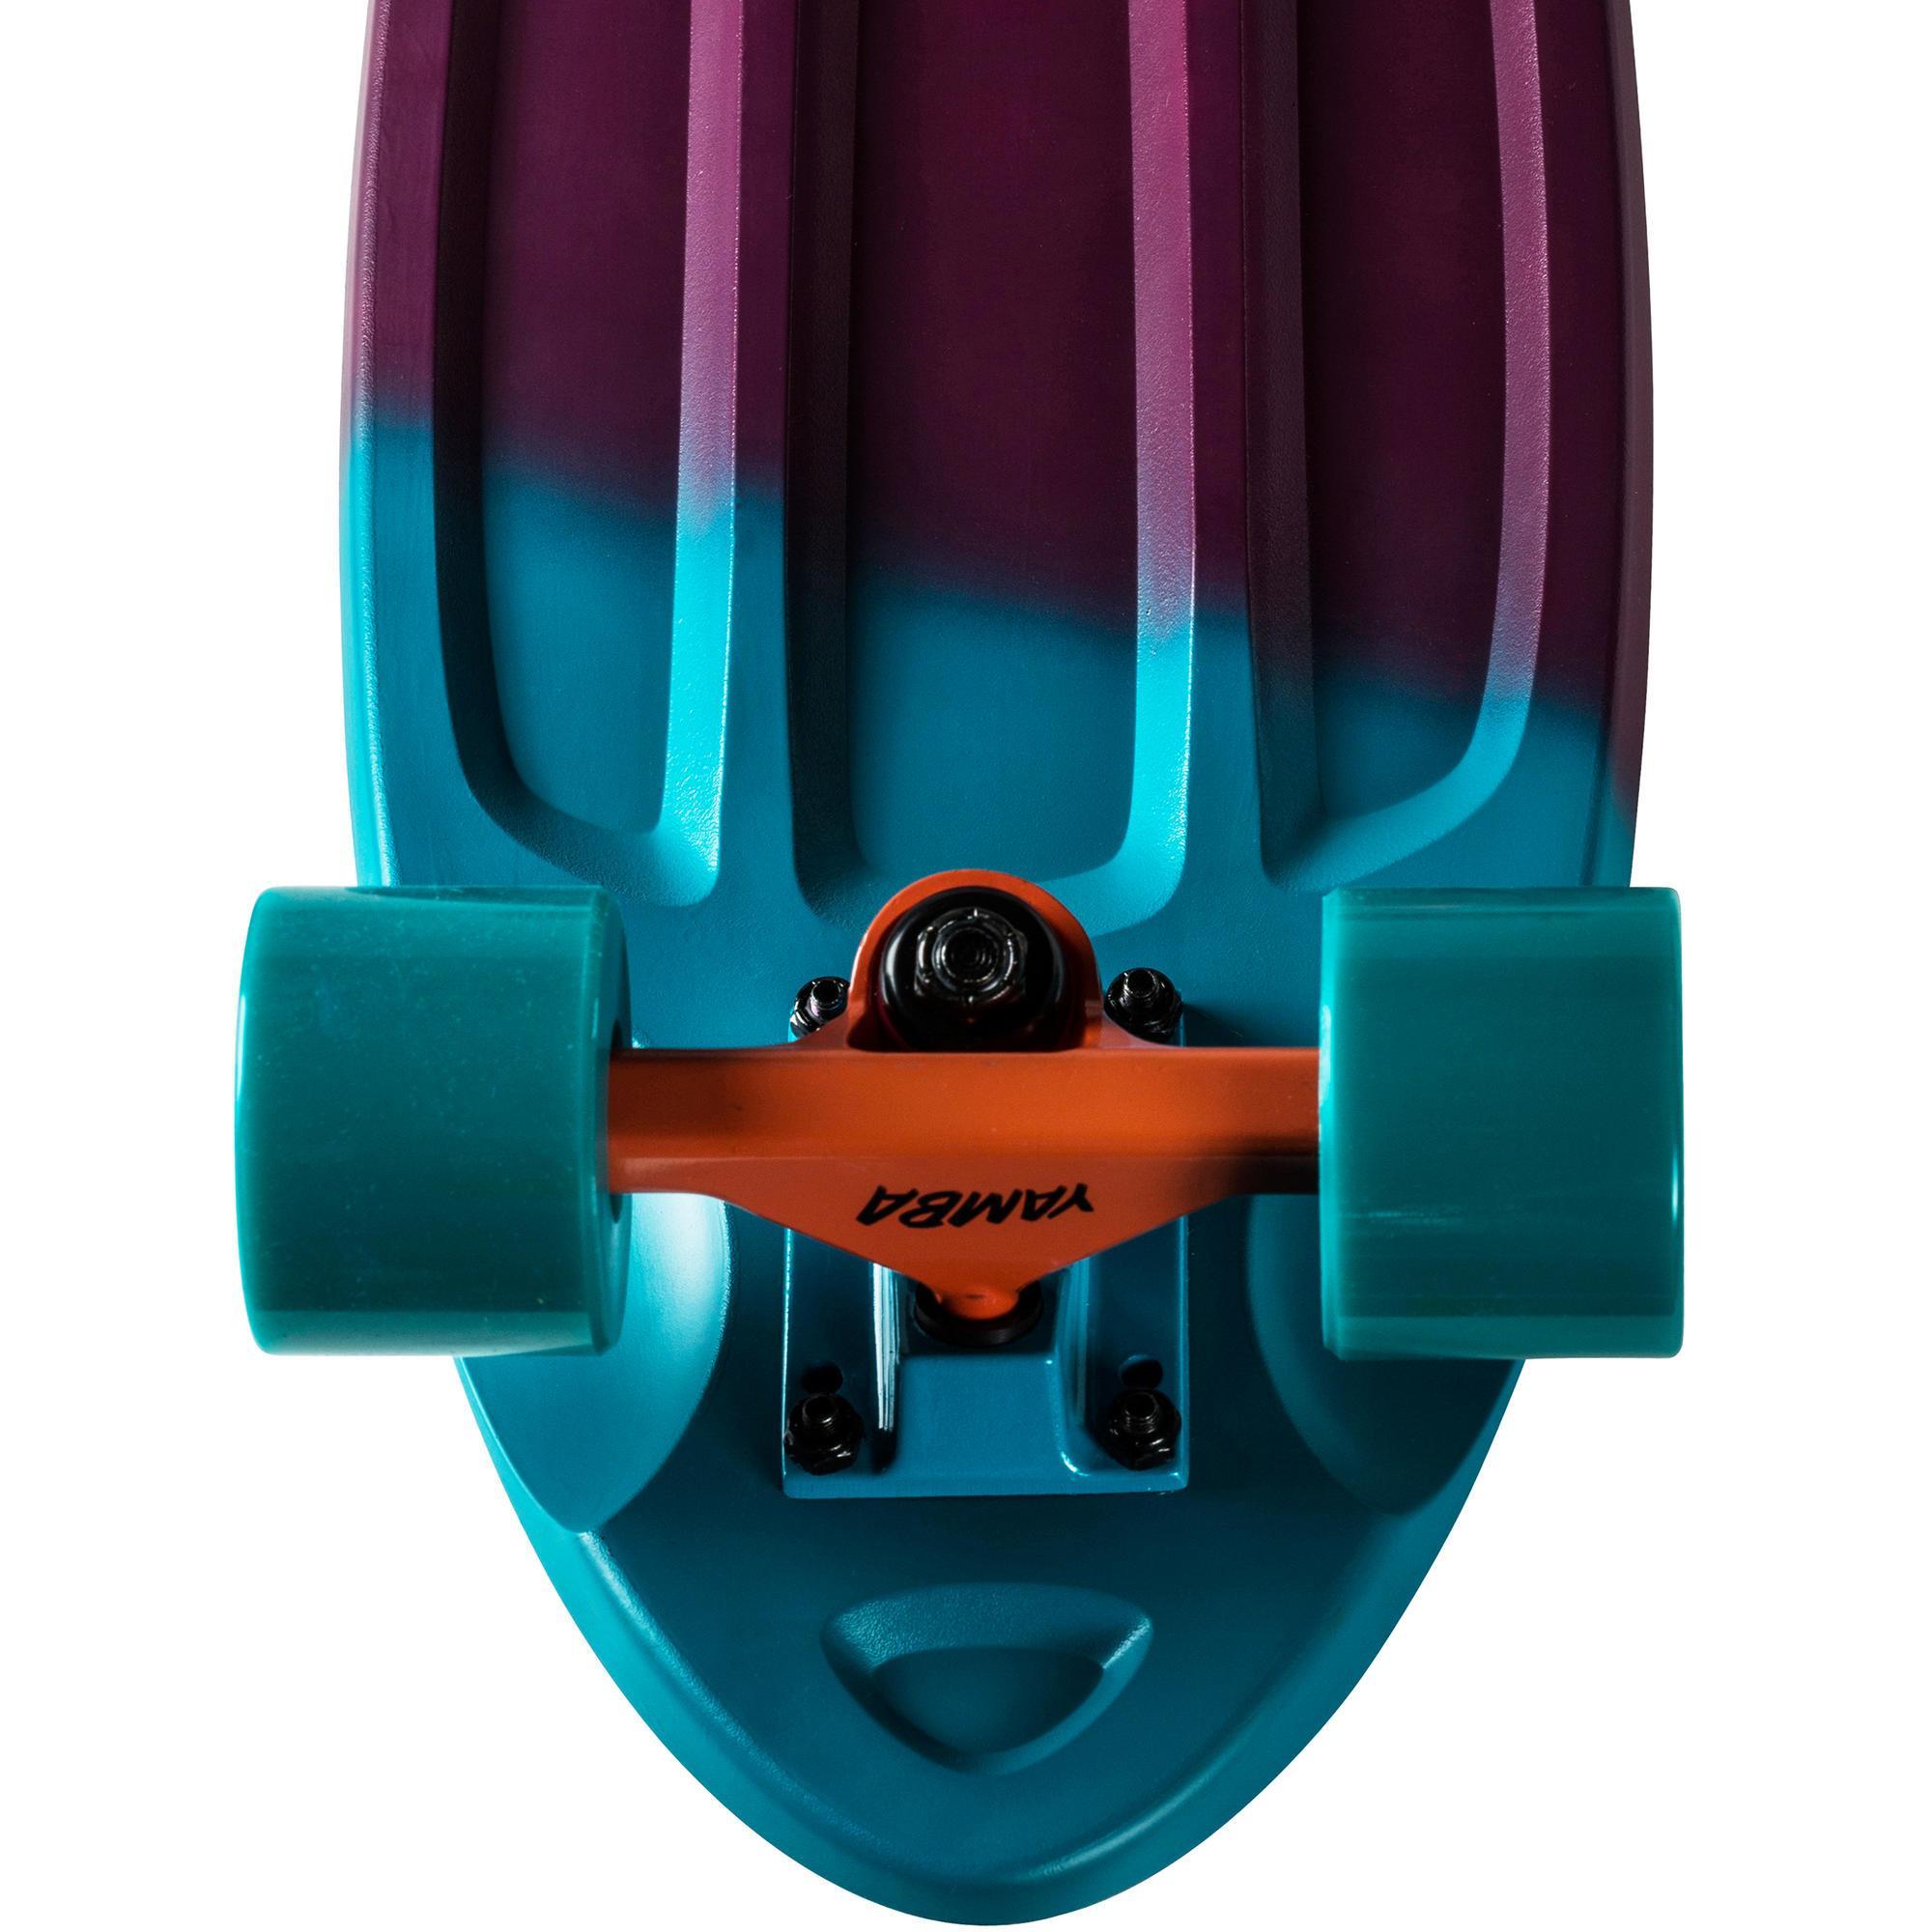 cruiser skateboard big yamba